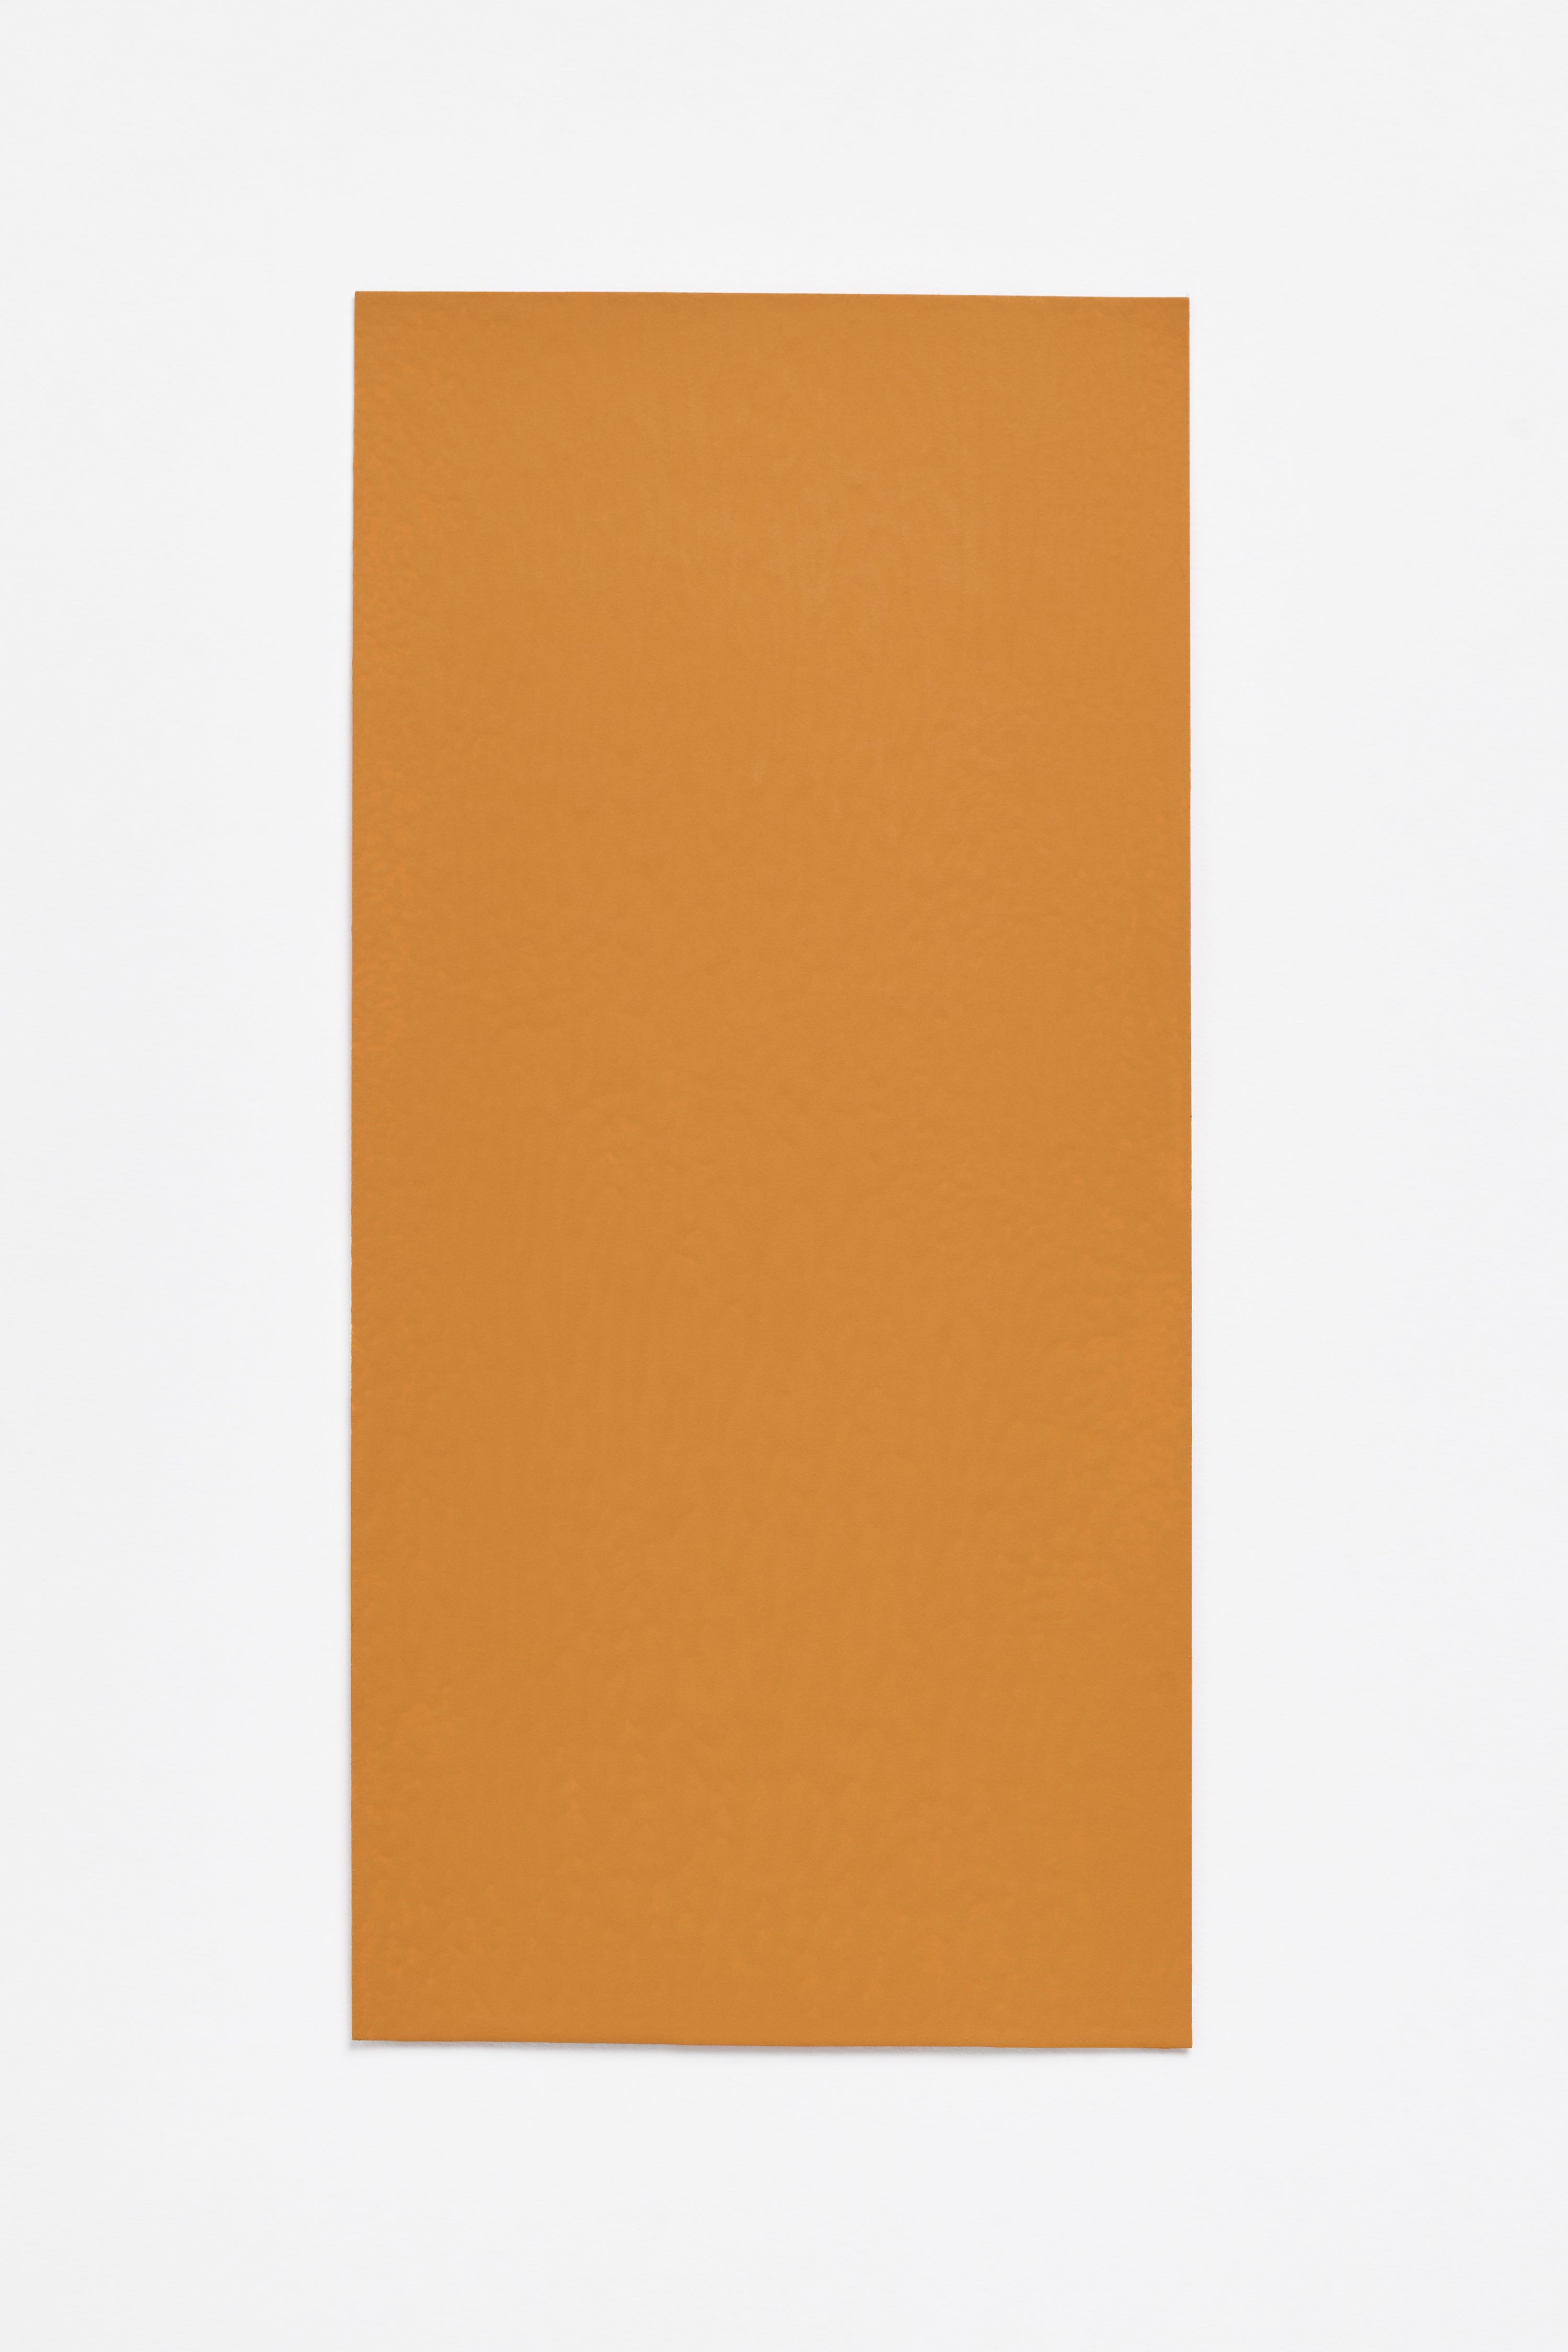 Almond — a paint colour developed by Sabine Marcelis for Blēo